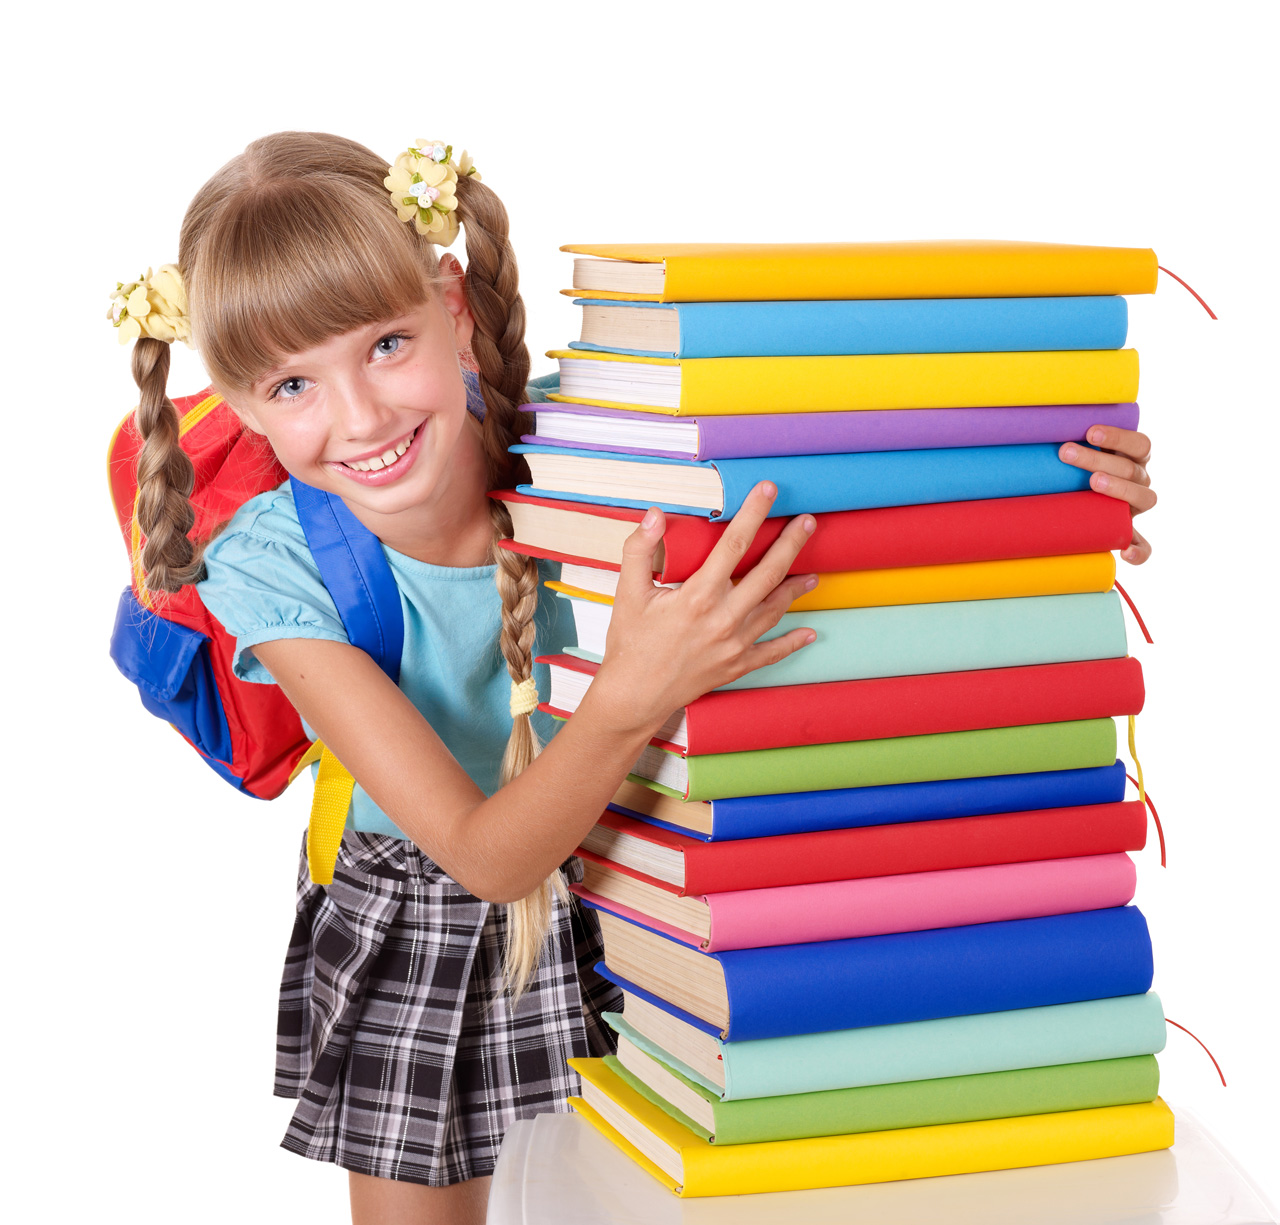 ТОП- 5 лучших книг для детей дошкольного возраста